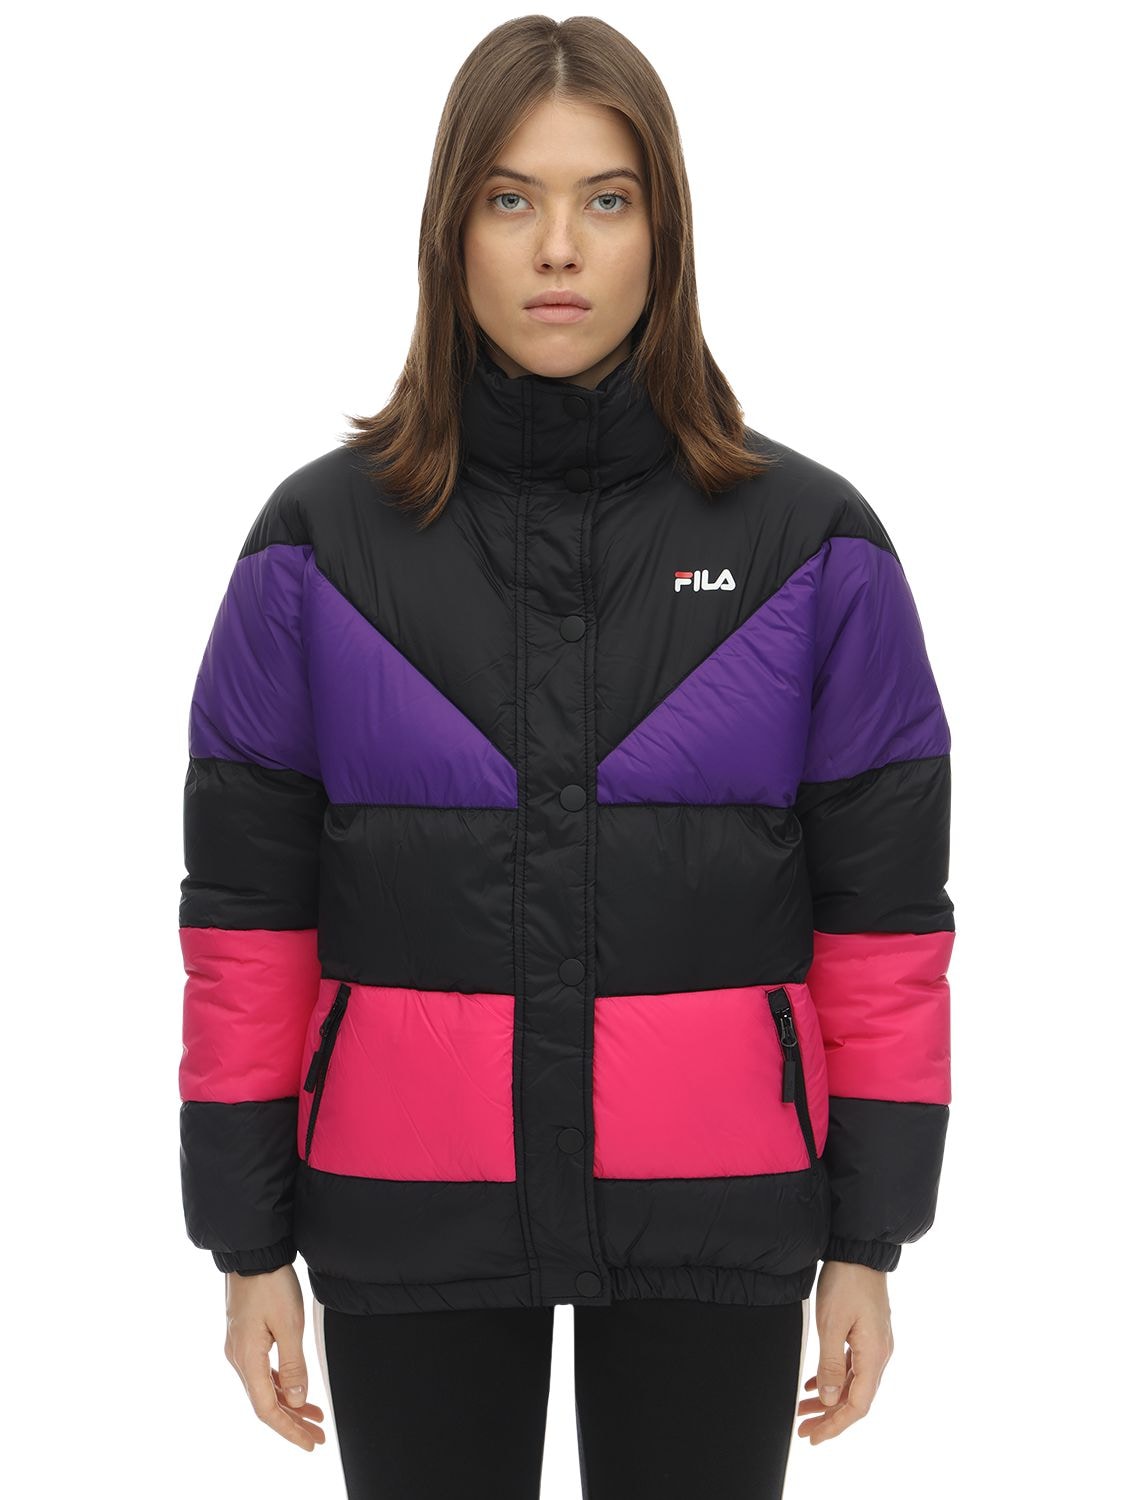 fila purple jacket